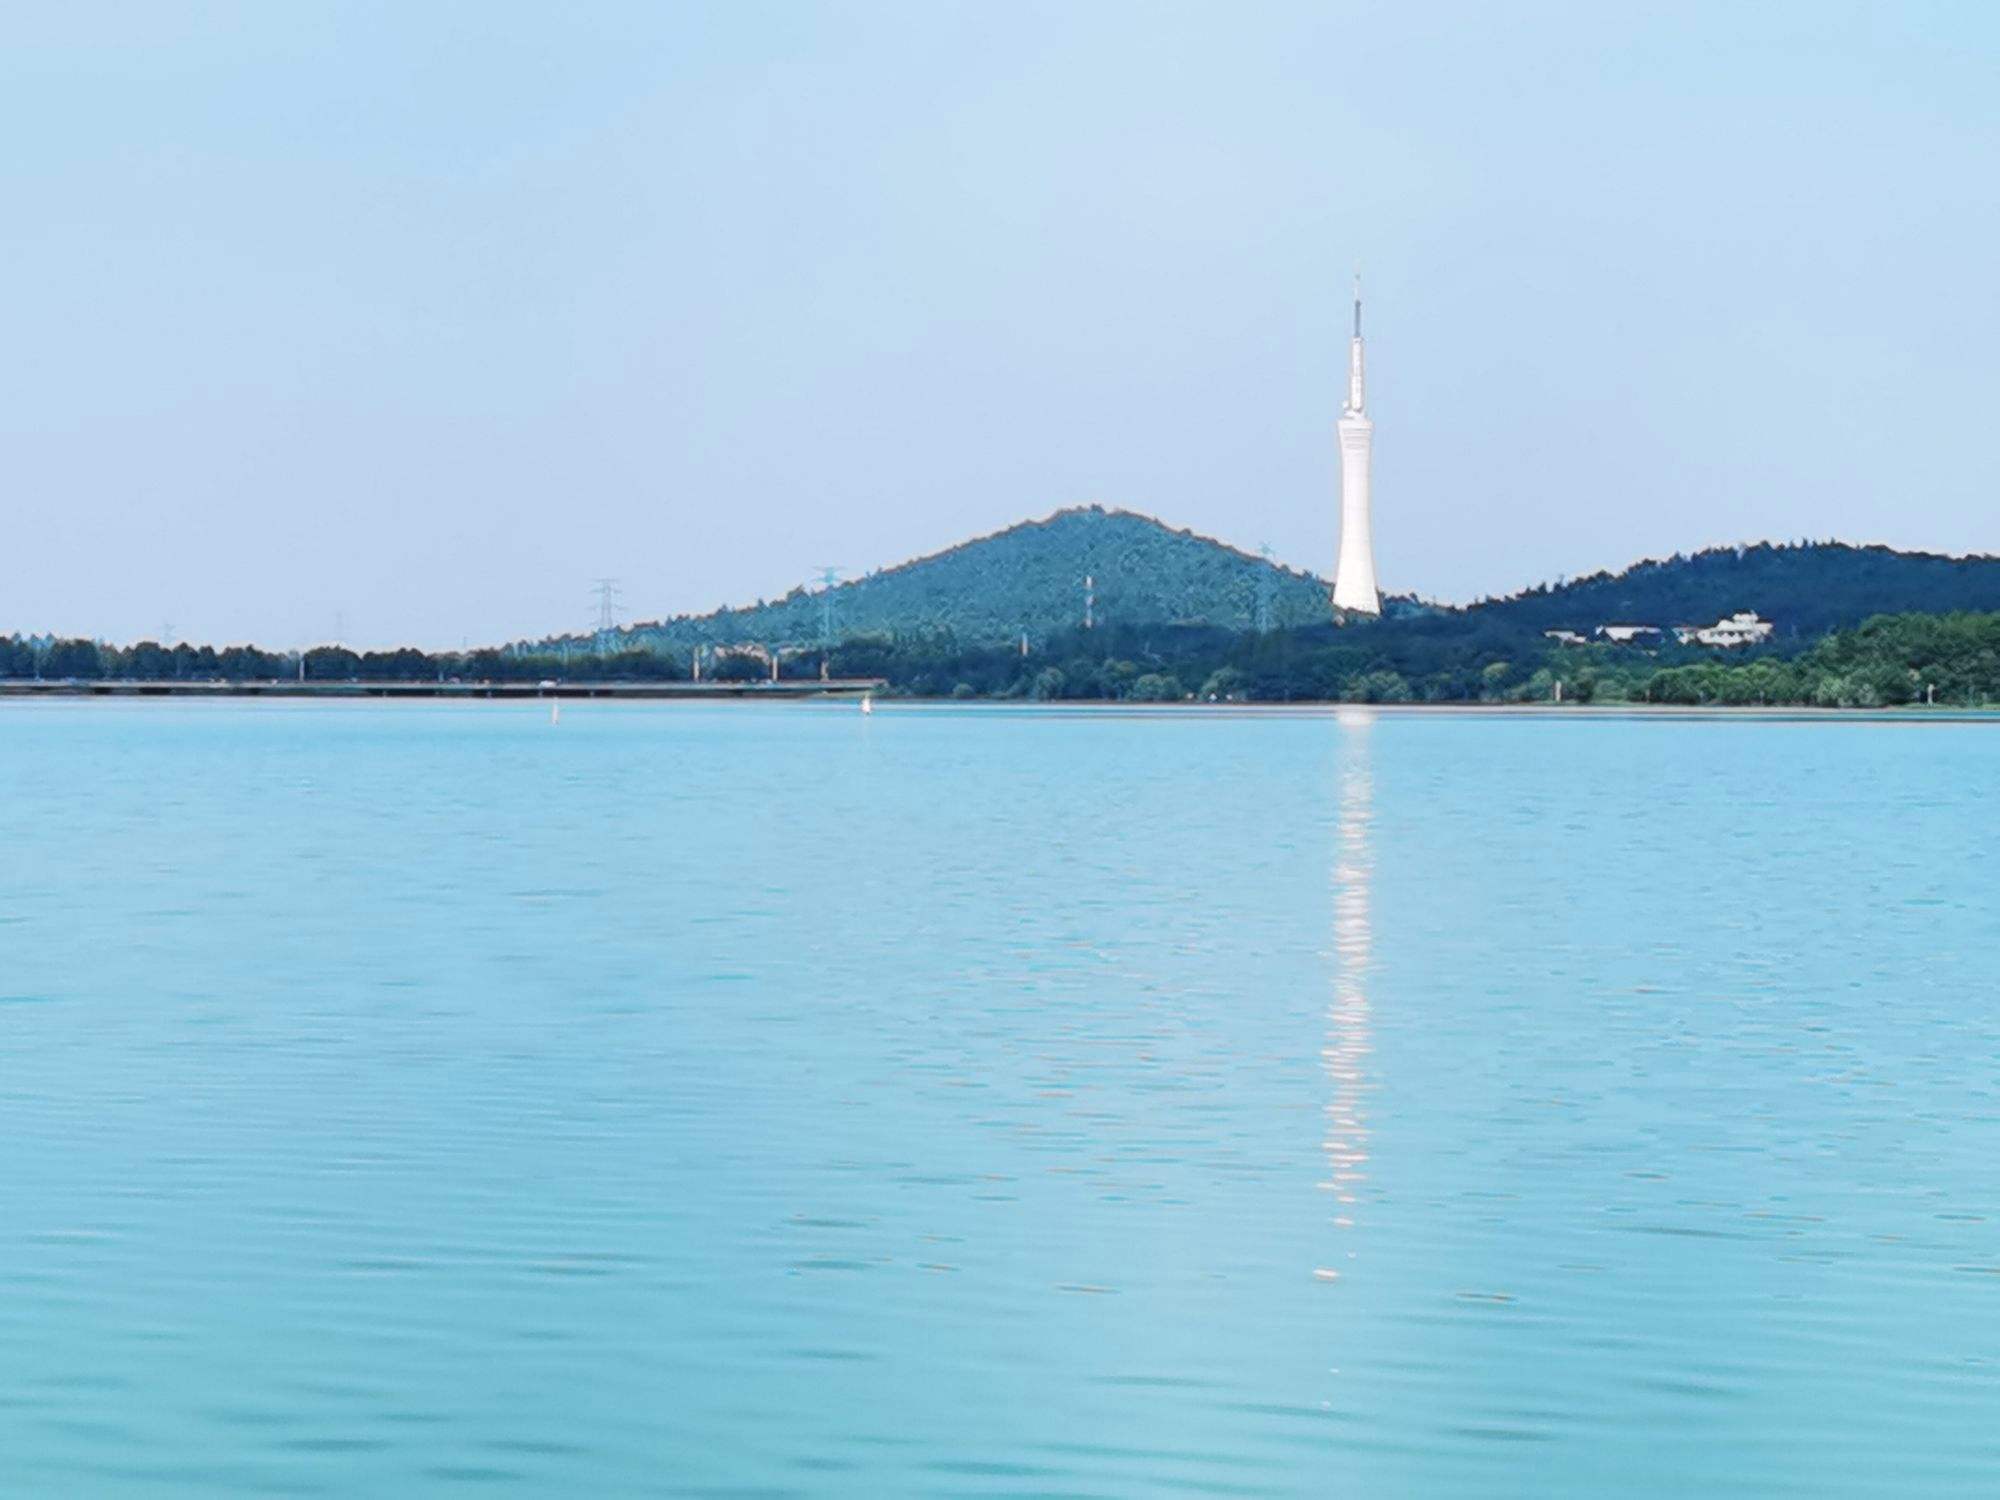 蚌埠龙子湖位于安徽省蚌埠市境内,是该市的一处旅游景点